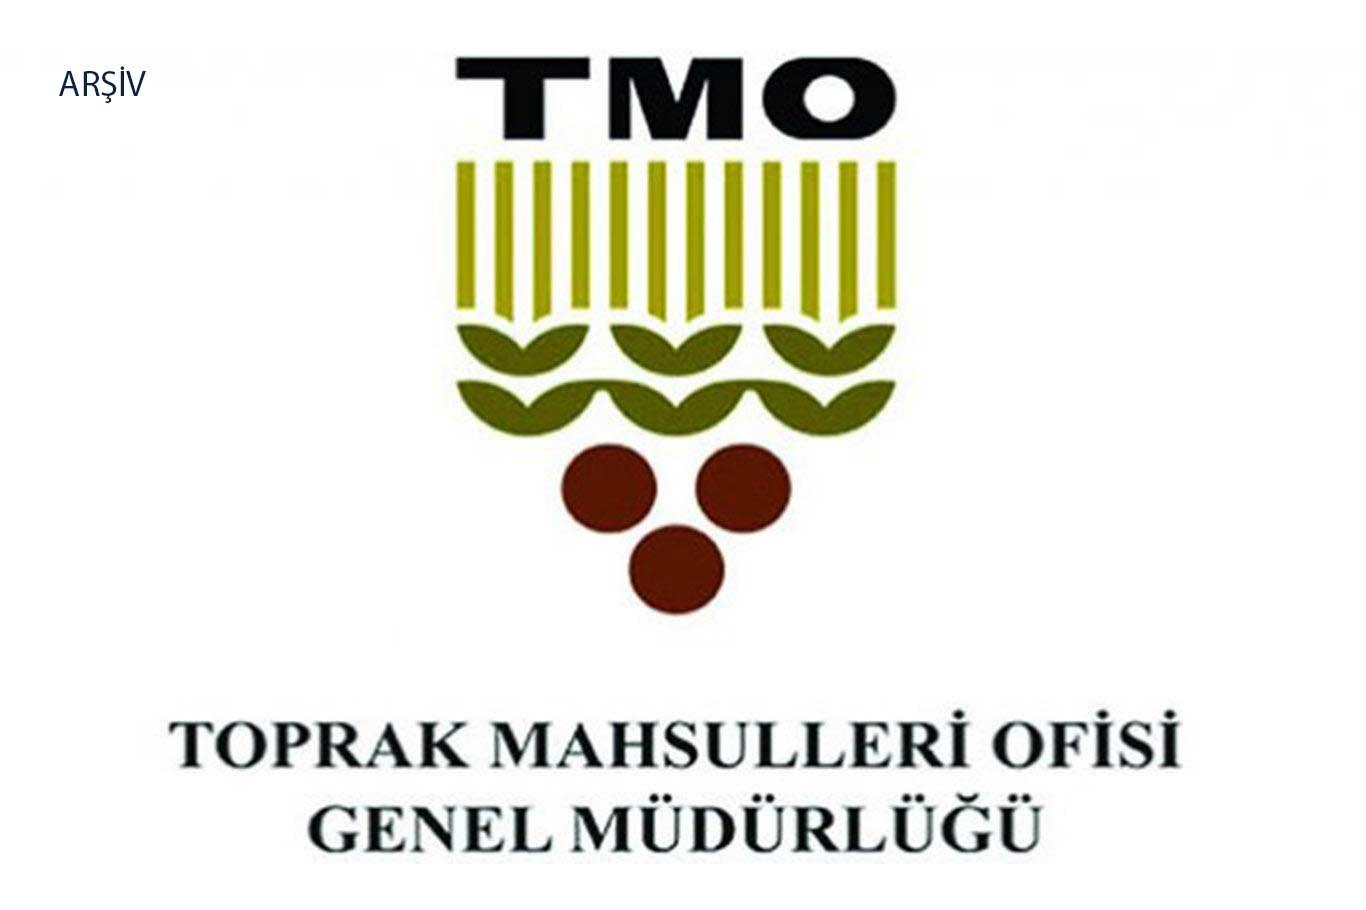 T me tmo up. TMO. Логотип ТМО. TMO Superevents. MITIS TMO.